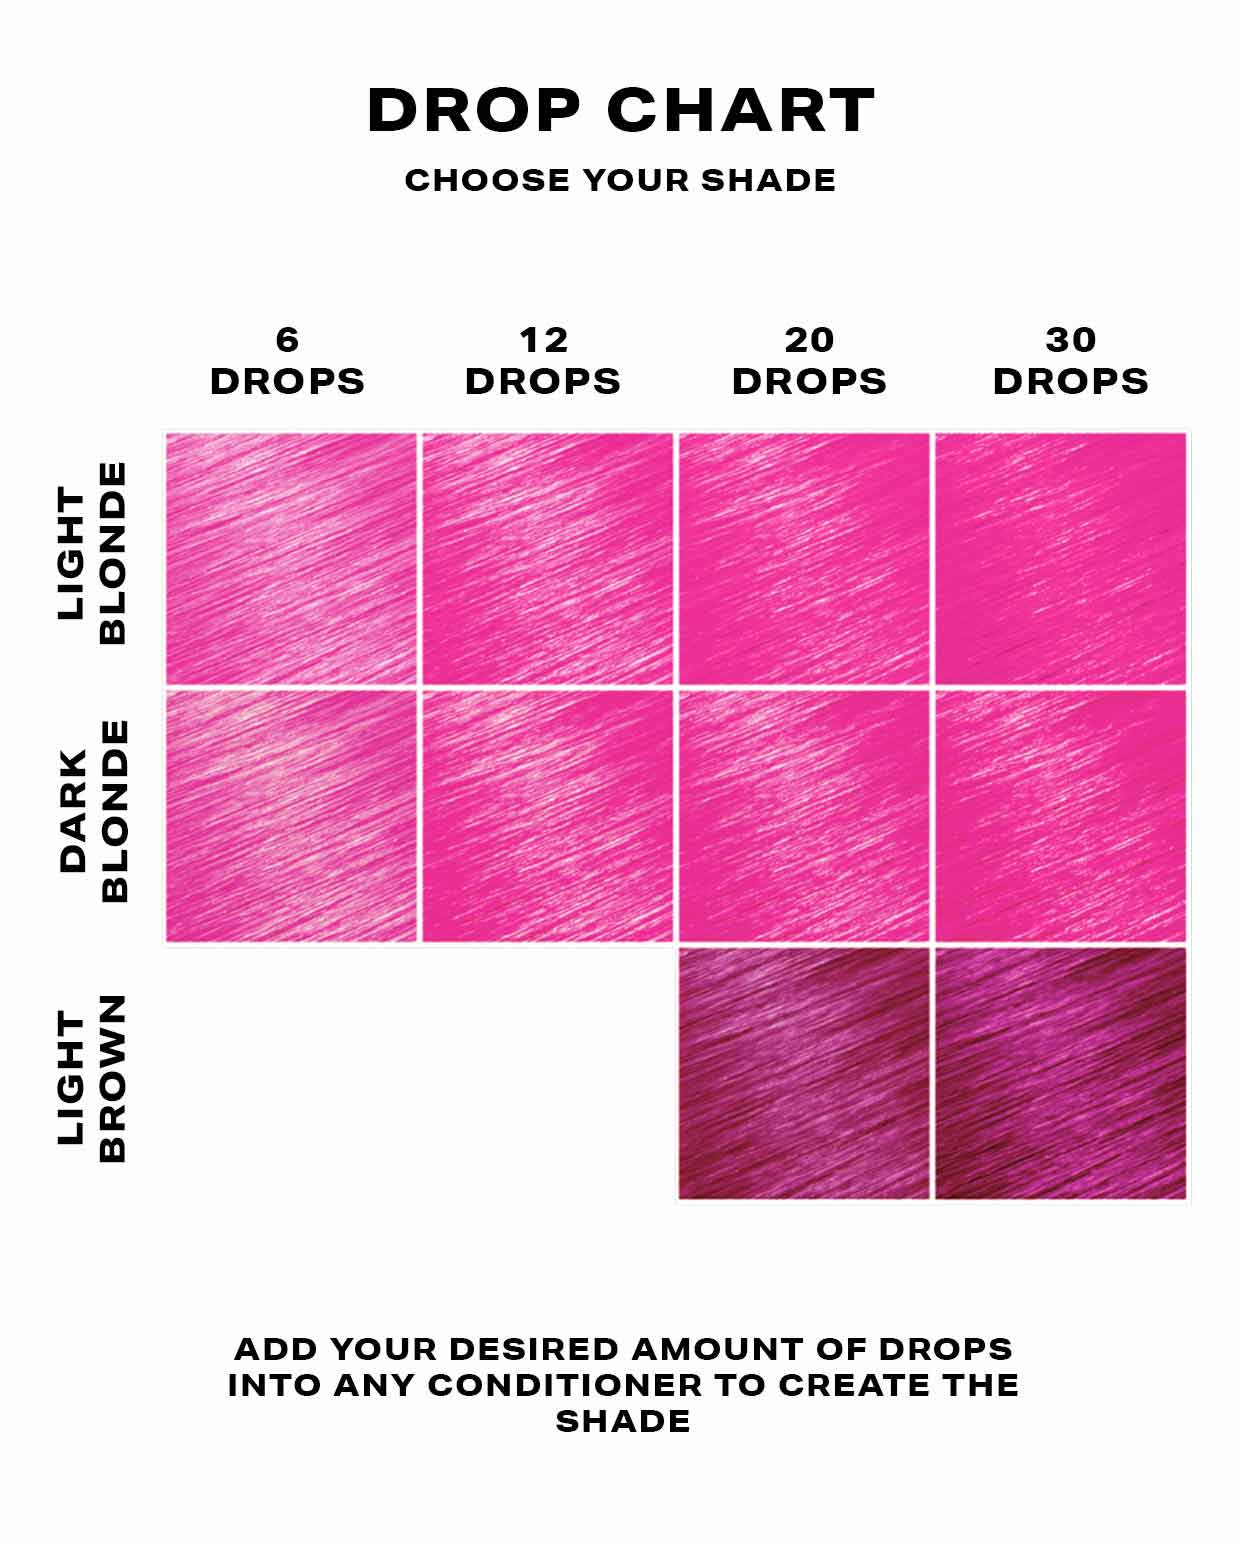 Hot Pink hair dye DROP IT chart